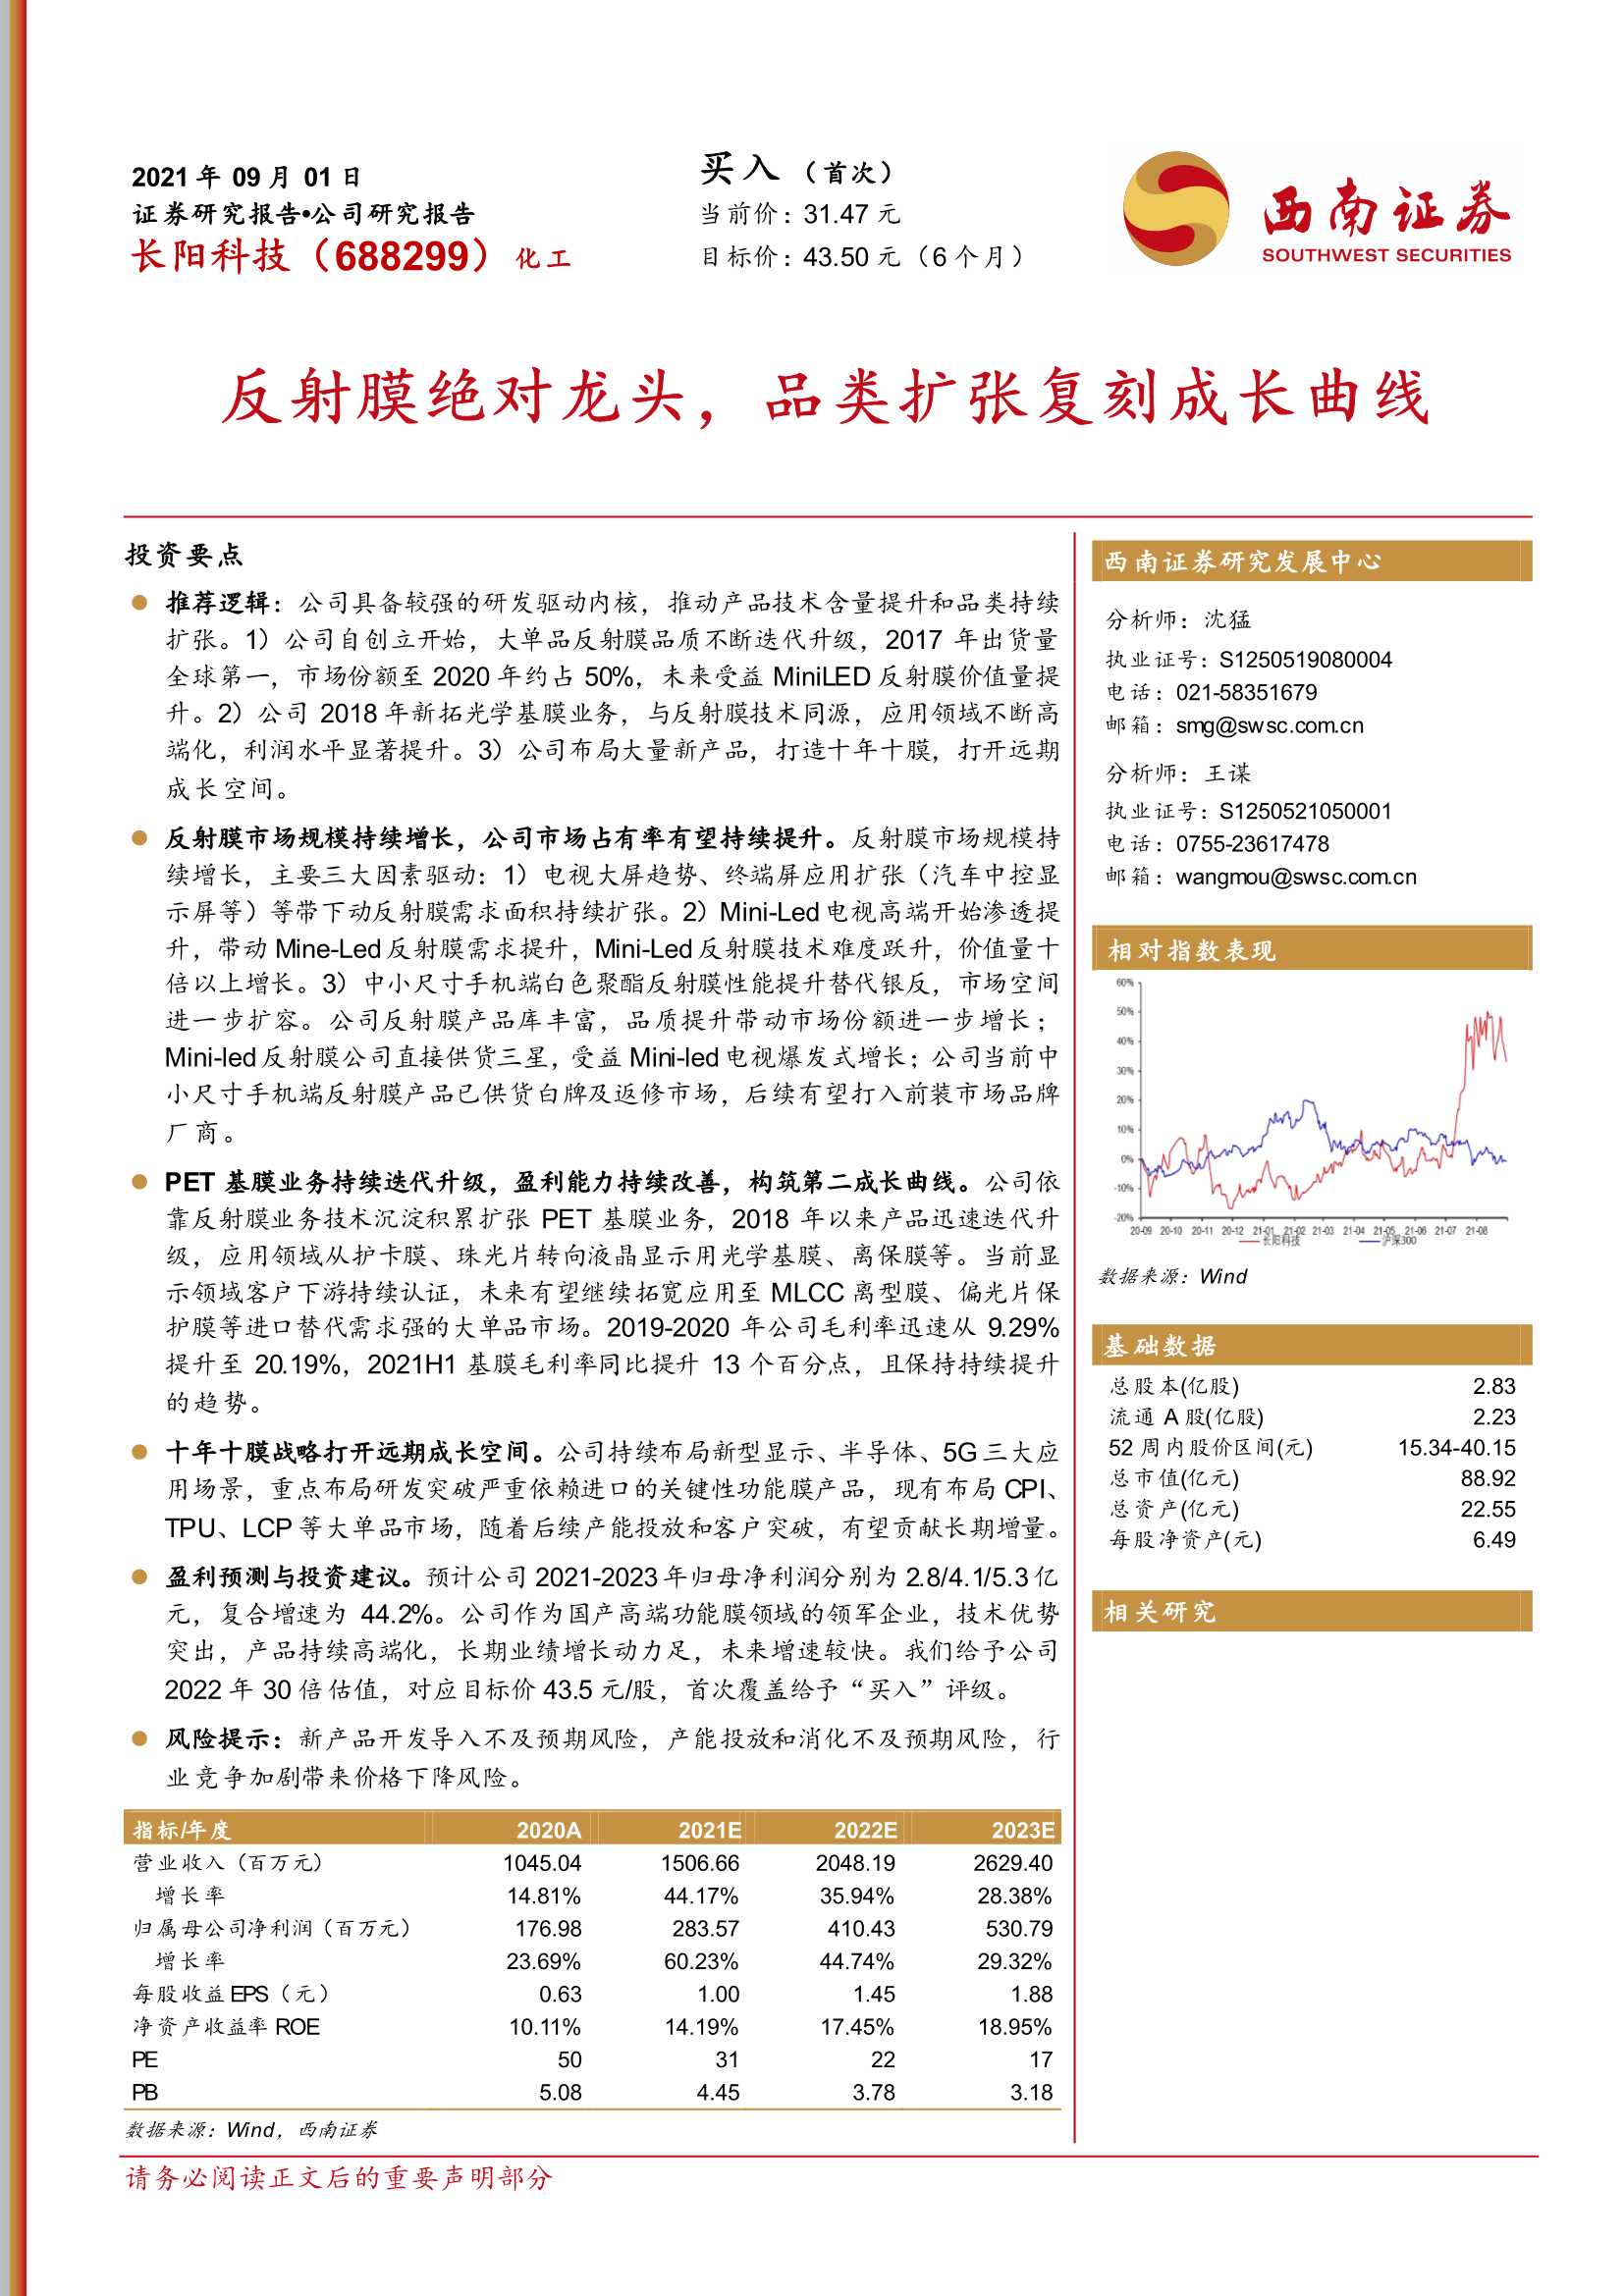 西南证券-长阳科技-688299-反射膜绝对龙头，品类扩张复刻成长曲线-20210901-29页